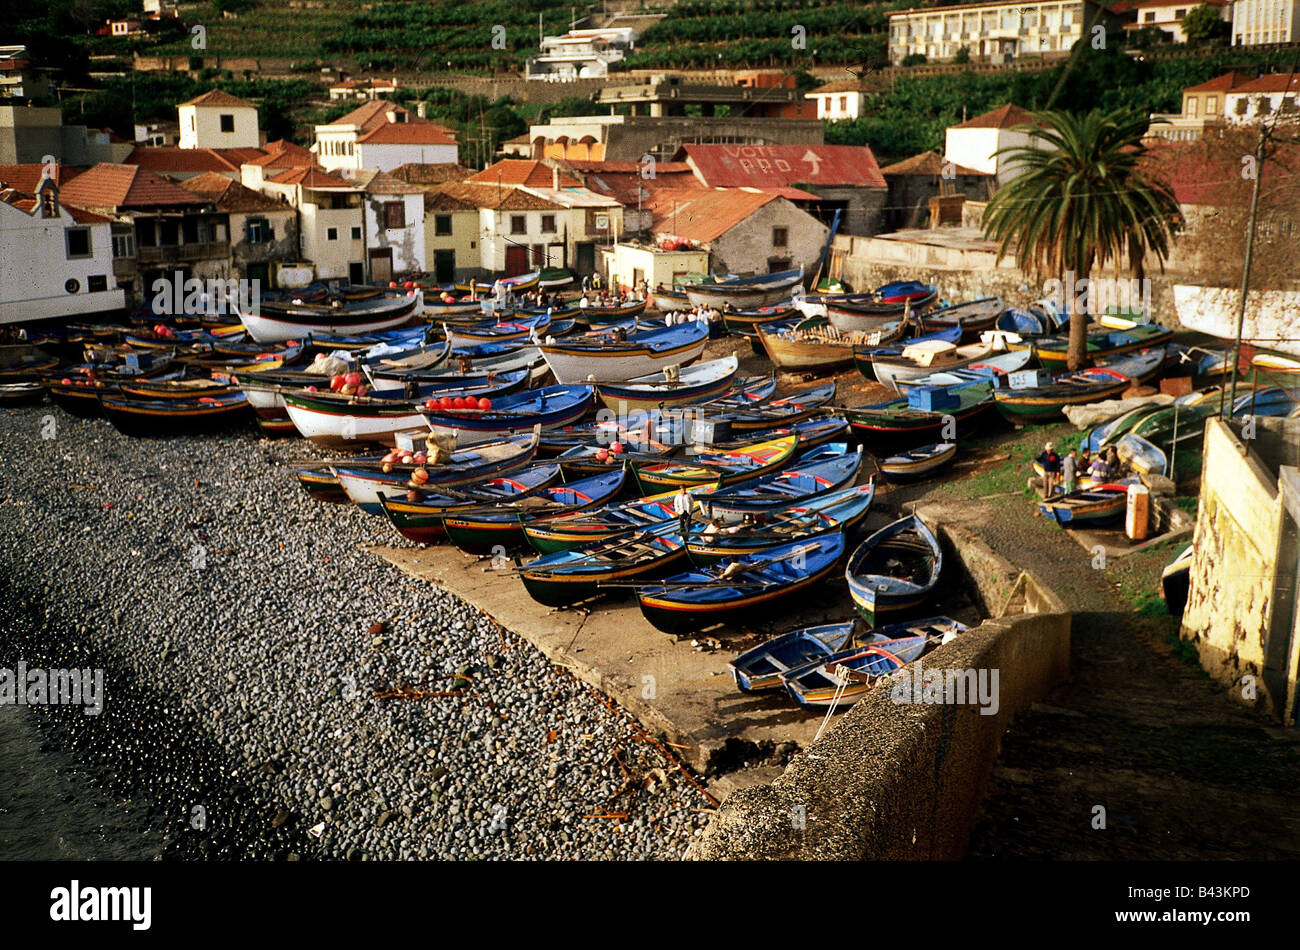 Geografia / viaggio, Portogallo, Madeira, Camara de Lobos, porto, porto di  pesca, guarda le barche da pesca, spiaggia, vacanza, vacanze, vacanza, a  cámara, villaggio, case, villaggio di pescatori, barca da pesca, barche,